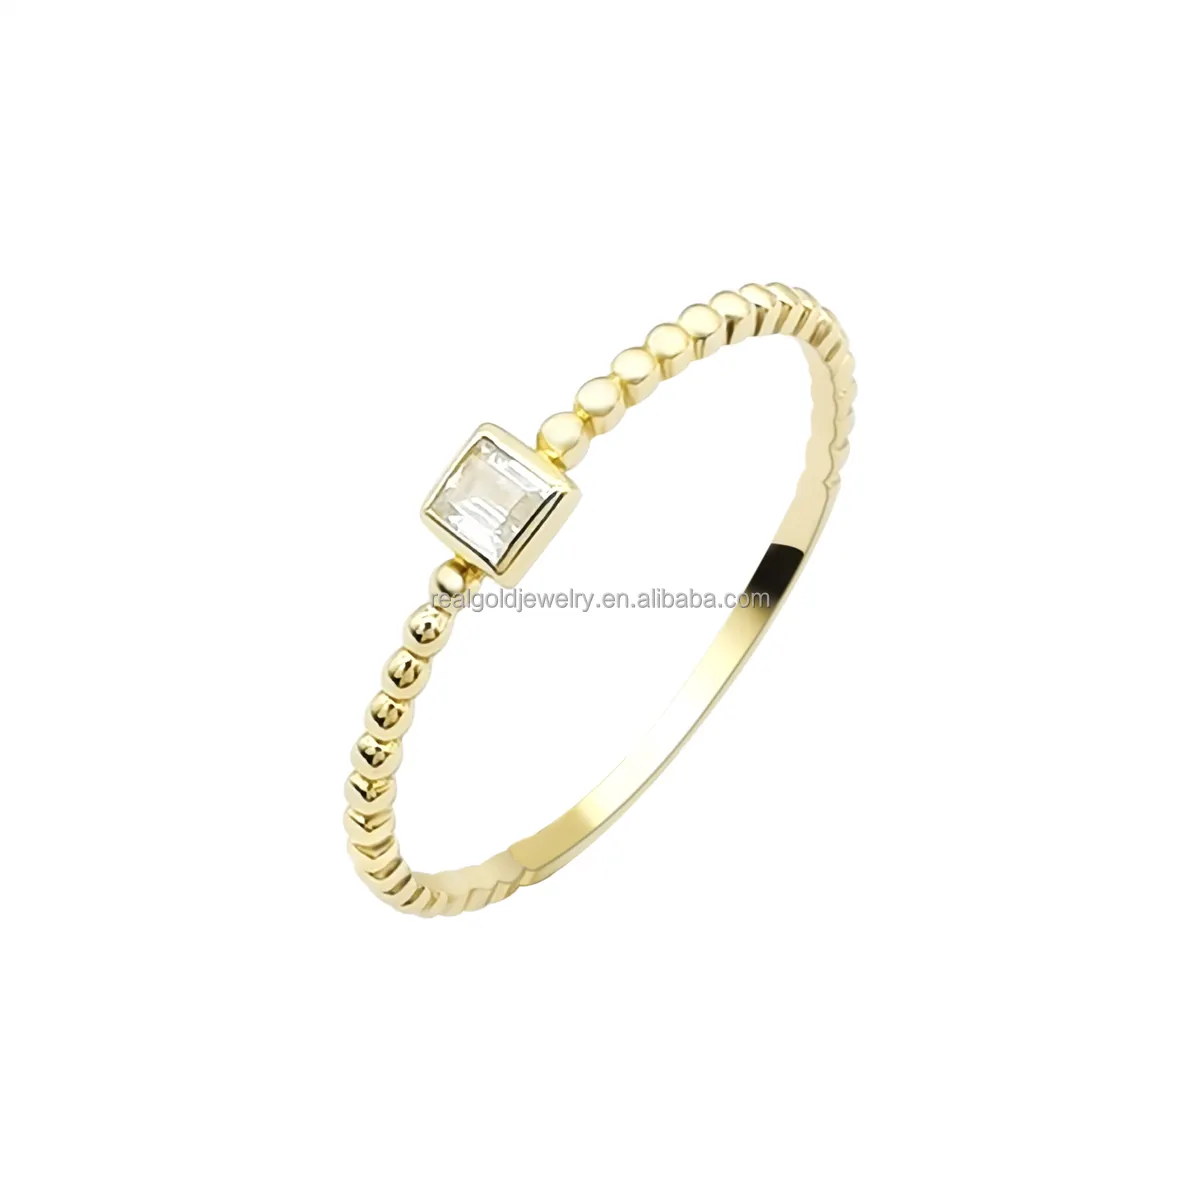 ความนิยม Dainty แหวน14K แหวนทองคำแท้กับเจ้าหญิงตัดเพชร CZ แหวนหินเครื่องประดับทองแท้